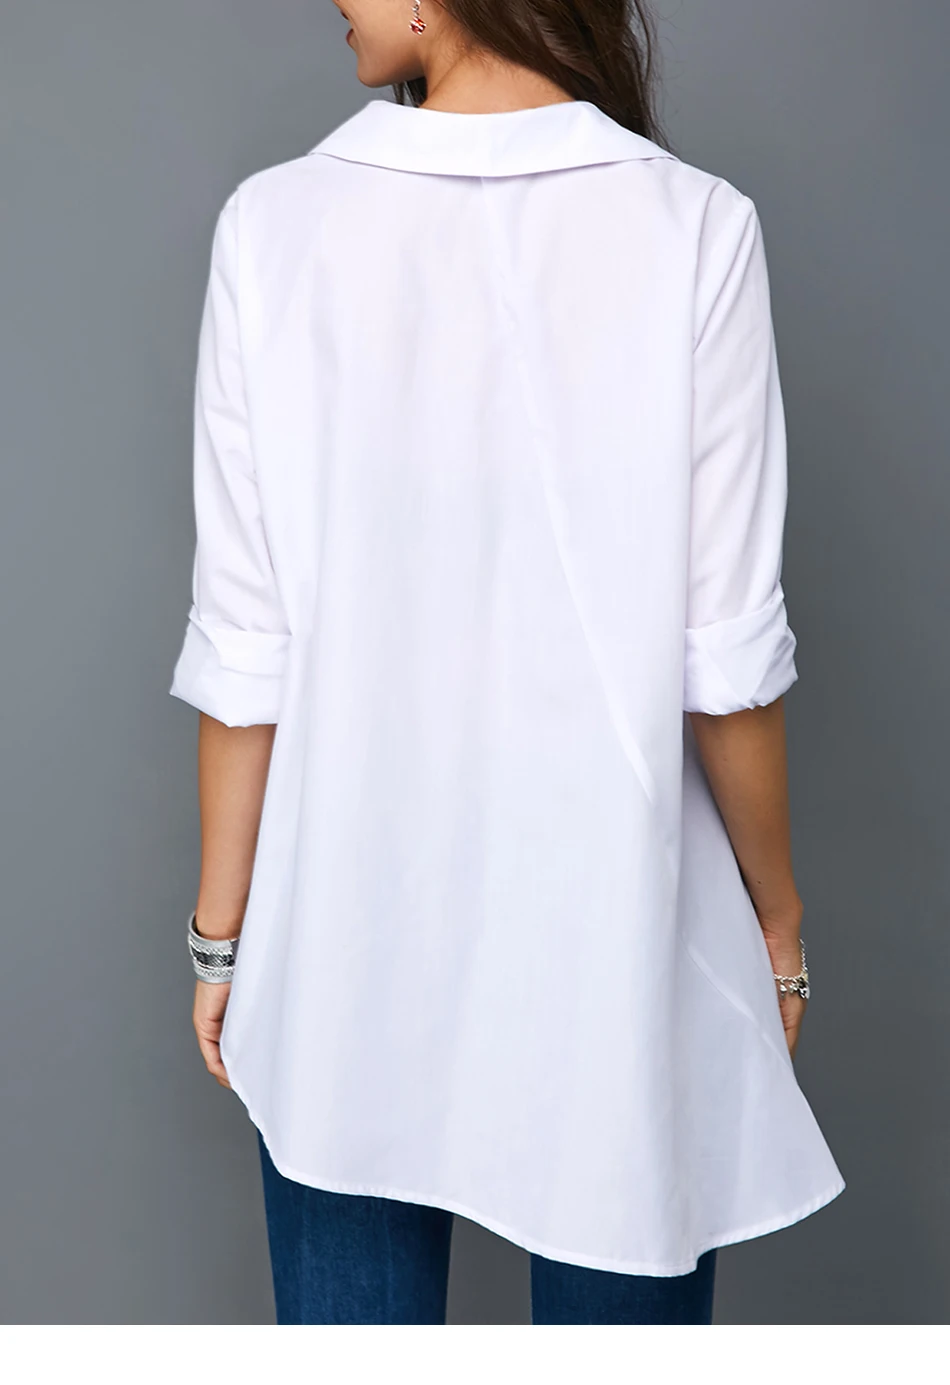 Необычная женская блузка, белая рубашка, Женская Повседневная цветная рубашка на пуговицах с длинным рукавом, женская рубашка большого размера 5XL, женские рубашки